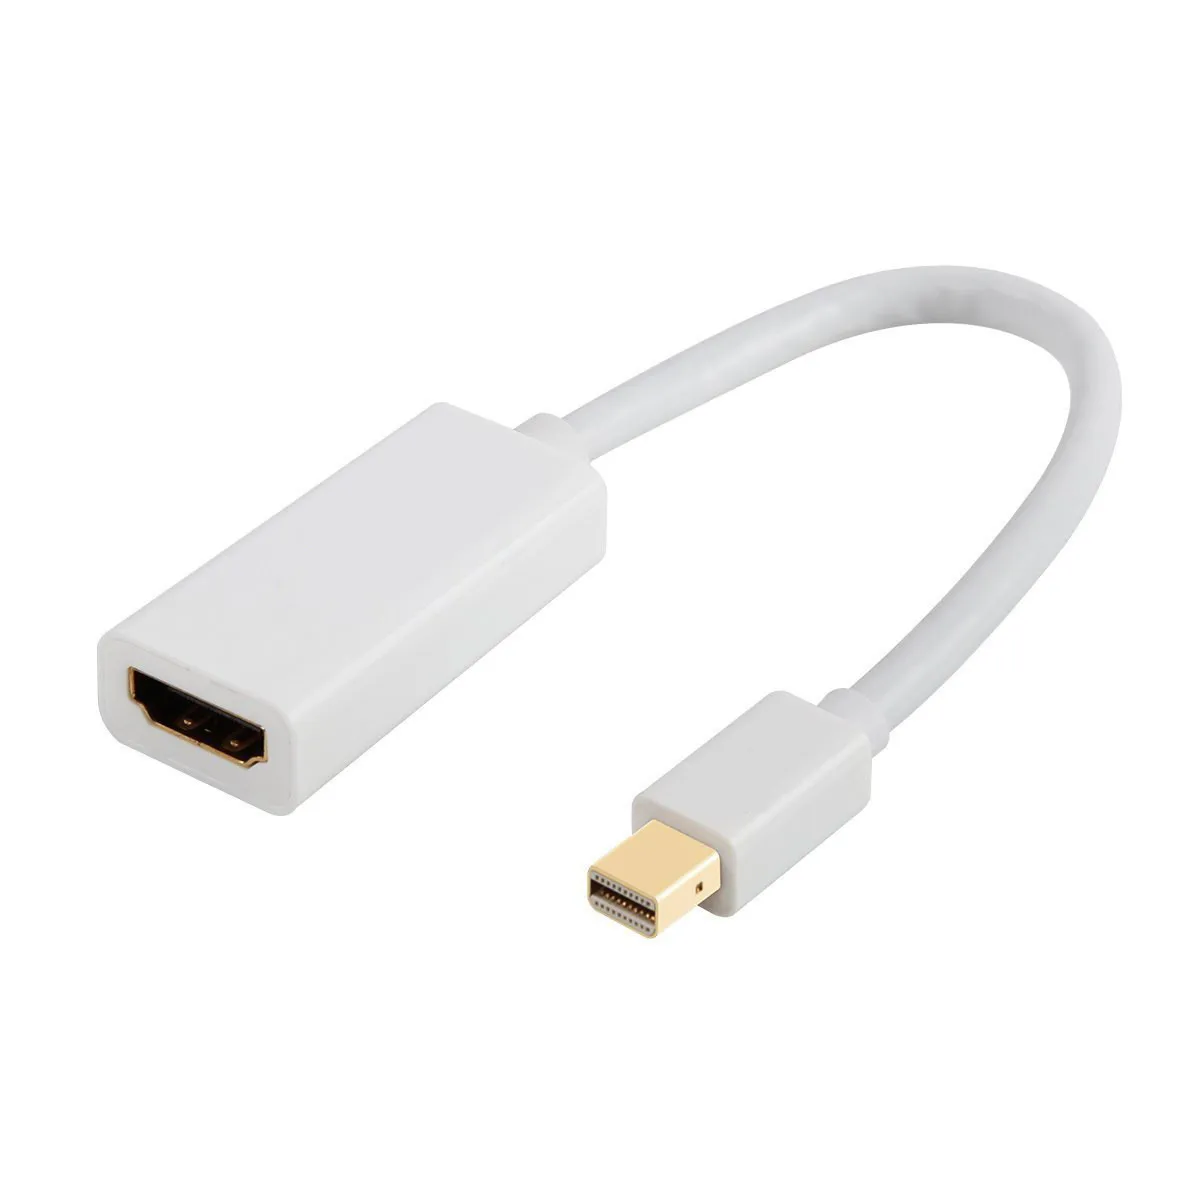 OMESHIN высококачественный Мини дисплейный порт для интерфейса Thunderbolt порт дисплея DP к HDMI Кабель-адаптер для Apple Mac Macbook Pro Air 160 мм - Цвет: White